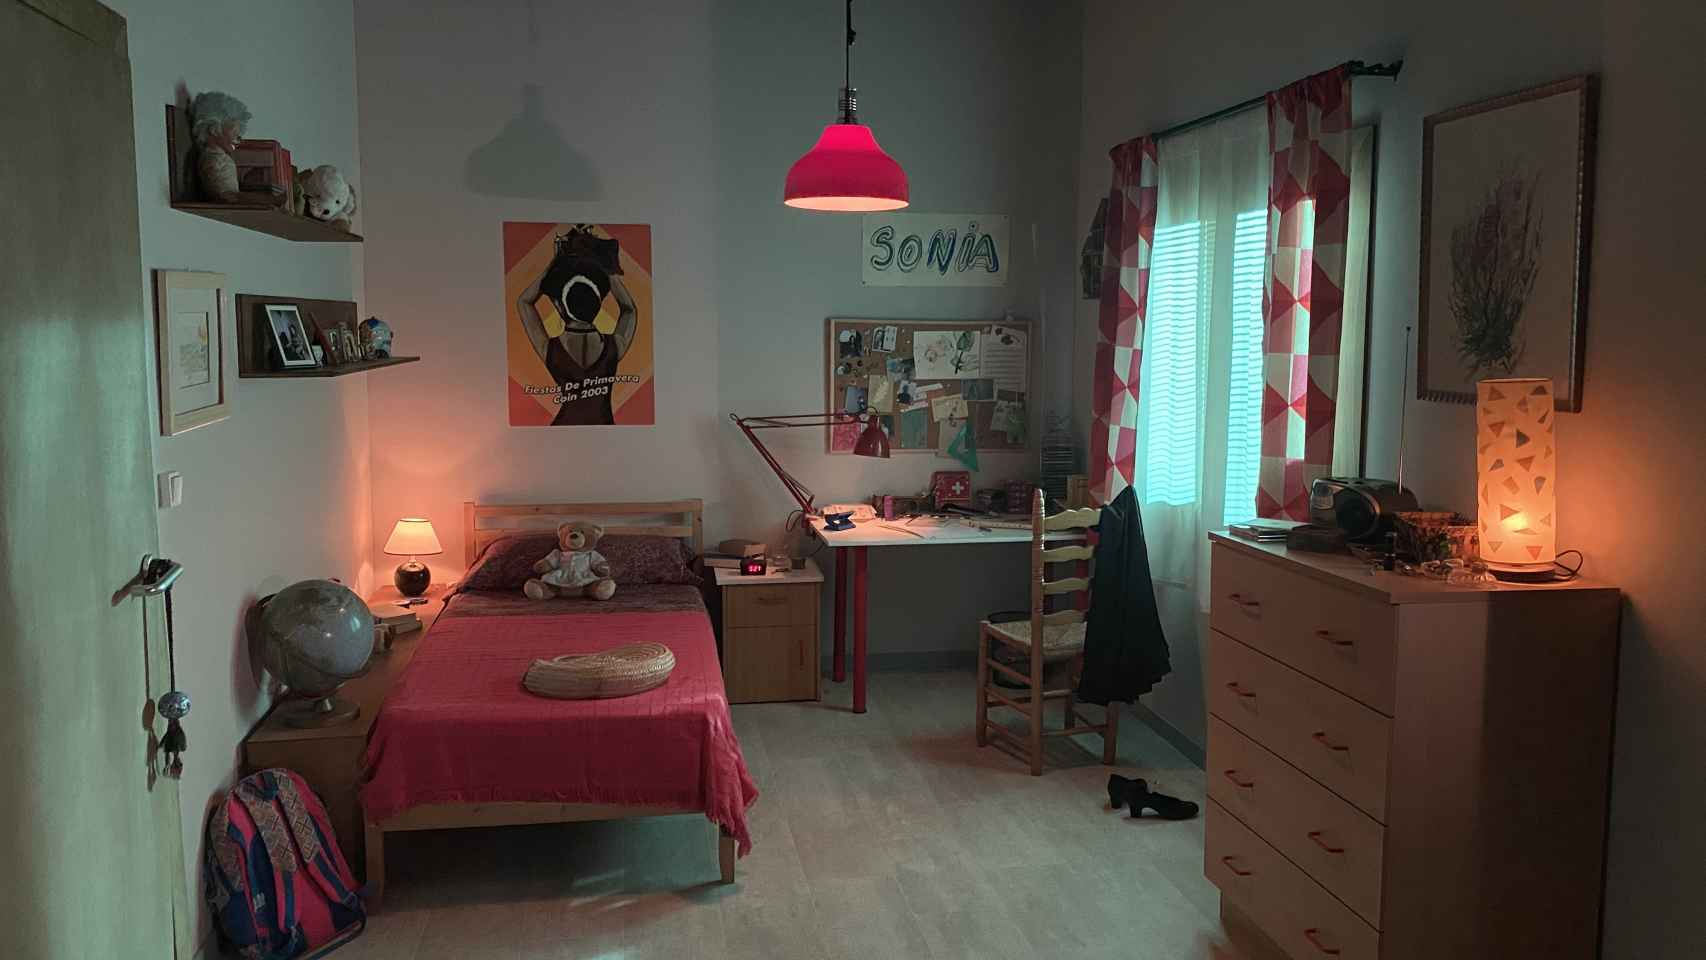 La habitación de Sonia Carabantes.